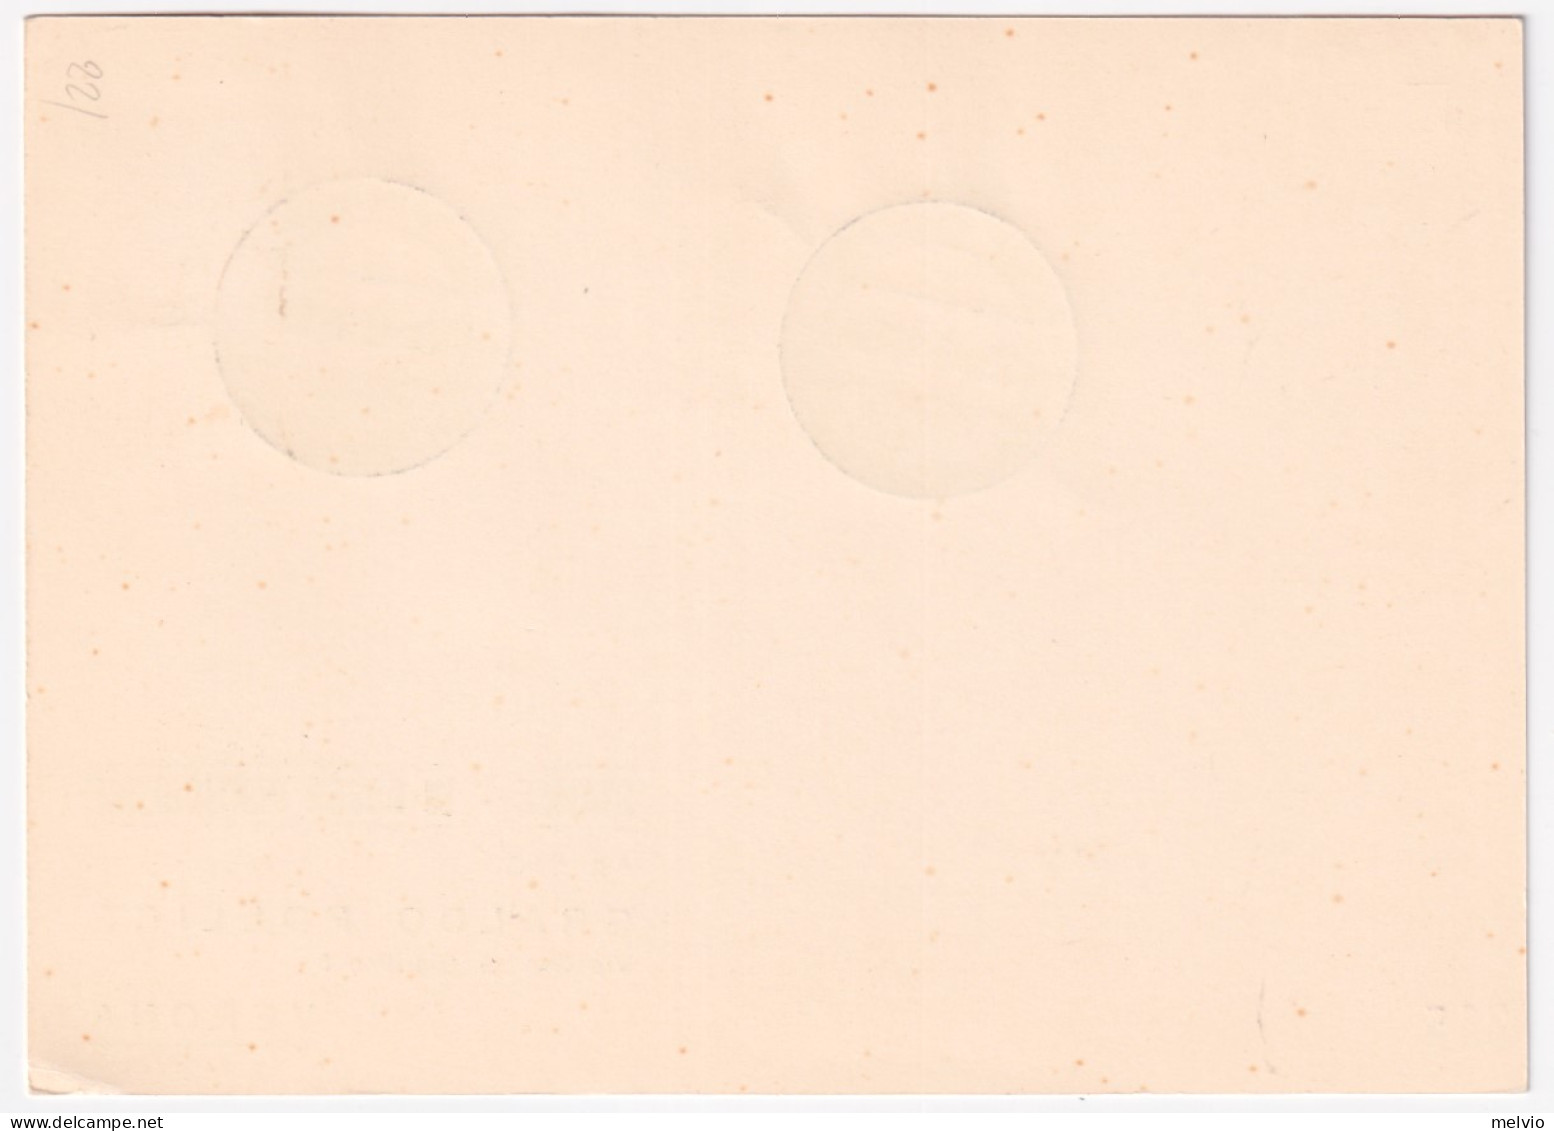 1956-VERONA 2 CONGRESSO U.I.S.P.T.T. (29.8) Annullo Speciale Su Cartolina - 1946-60: Marcophilia